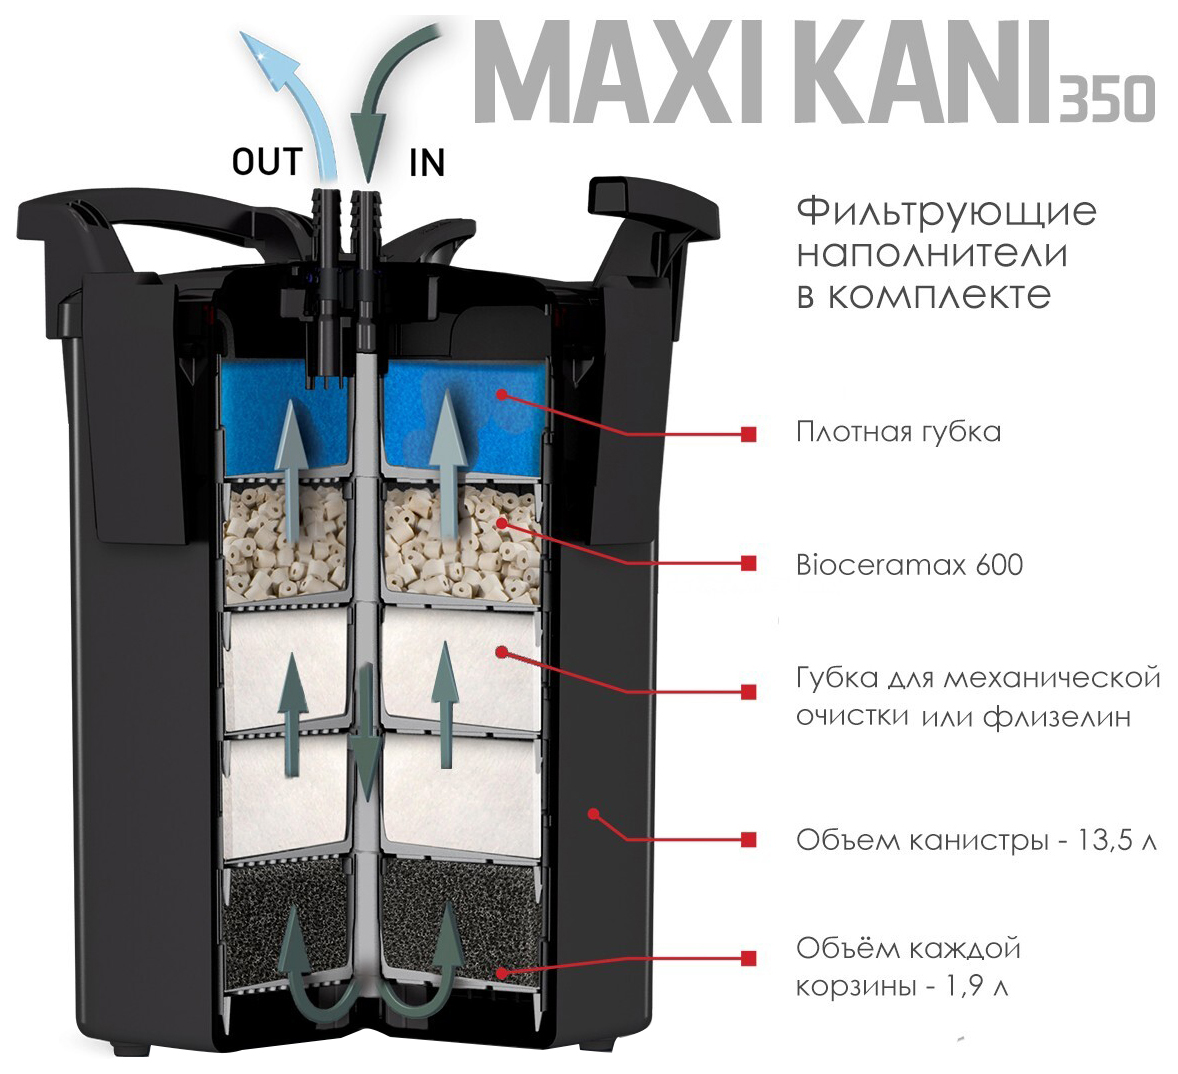 Фильтр для аквариума внешний Aquael MAXI KANI 350, 1400 л/ч